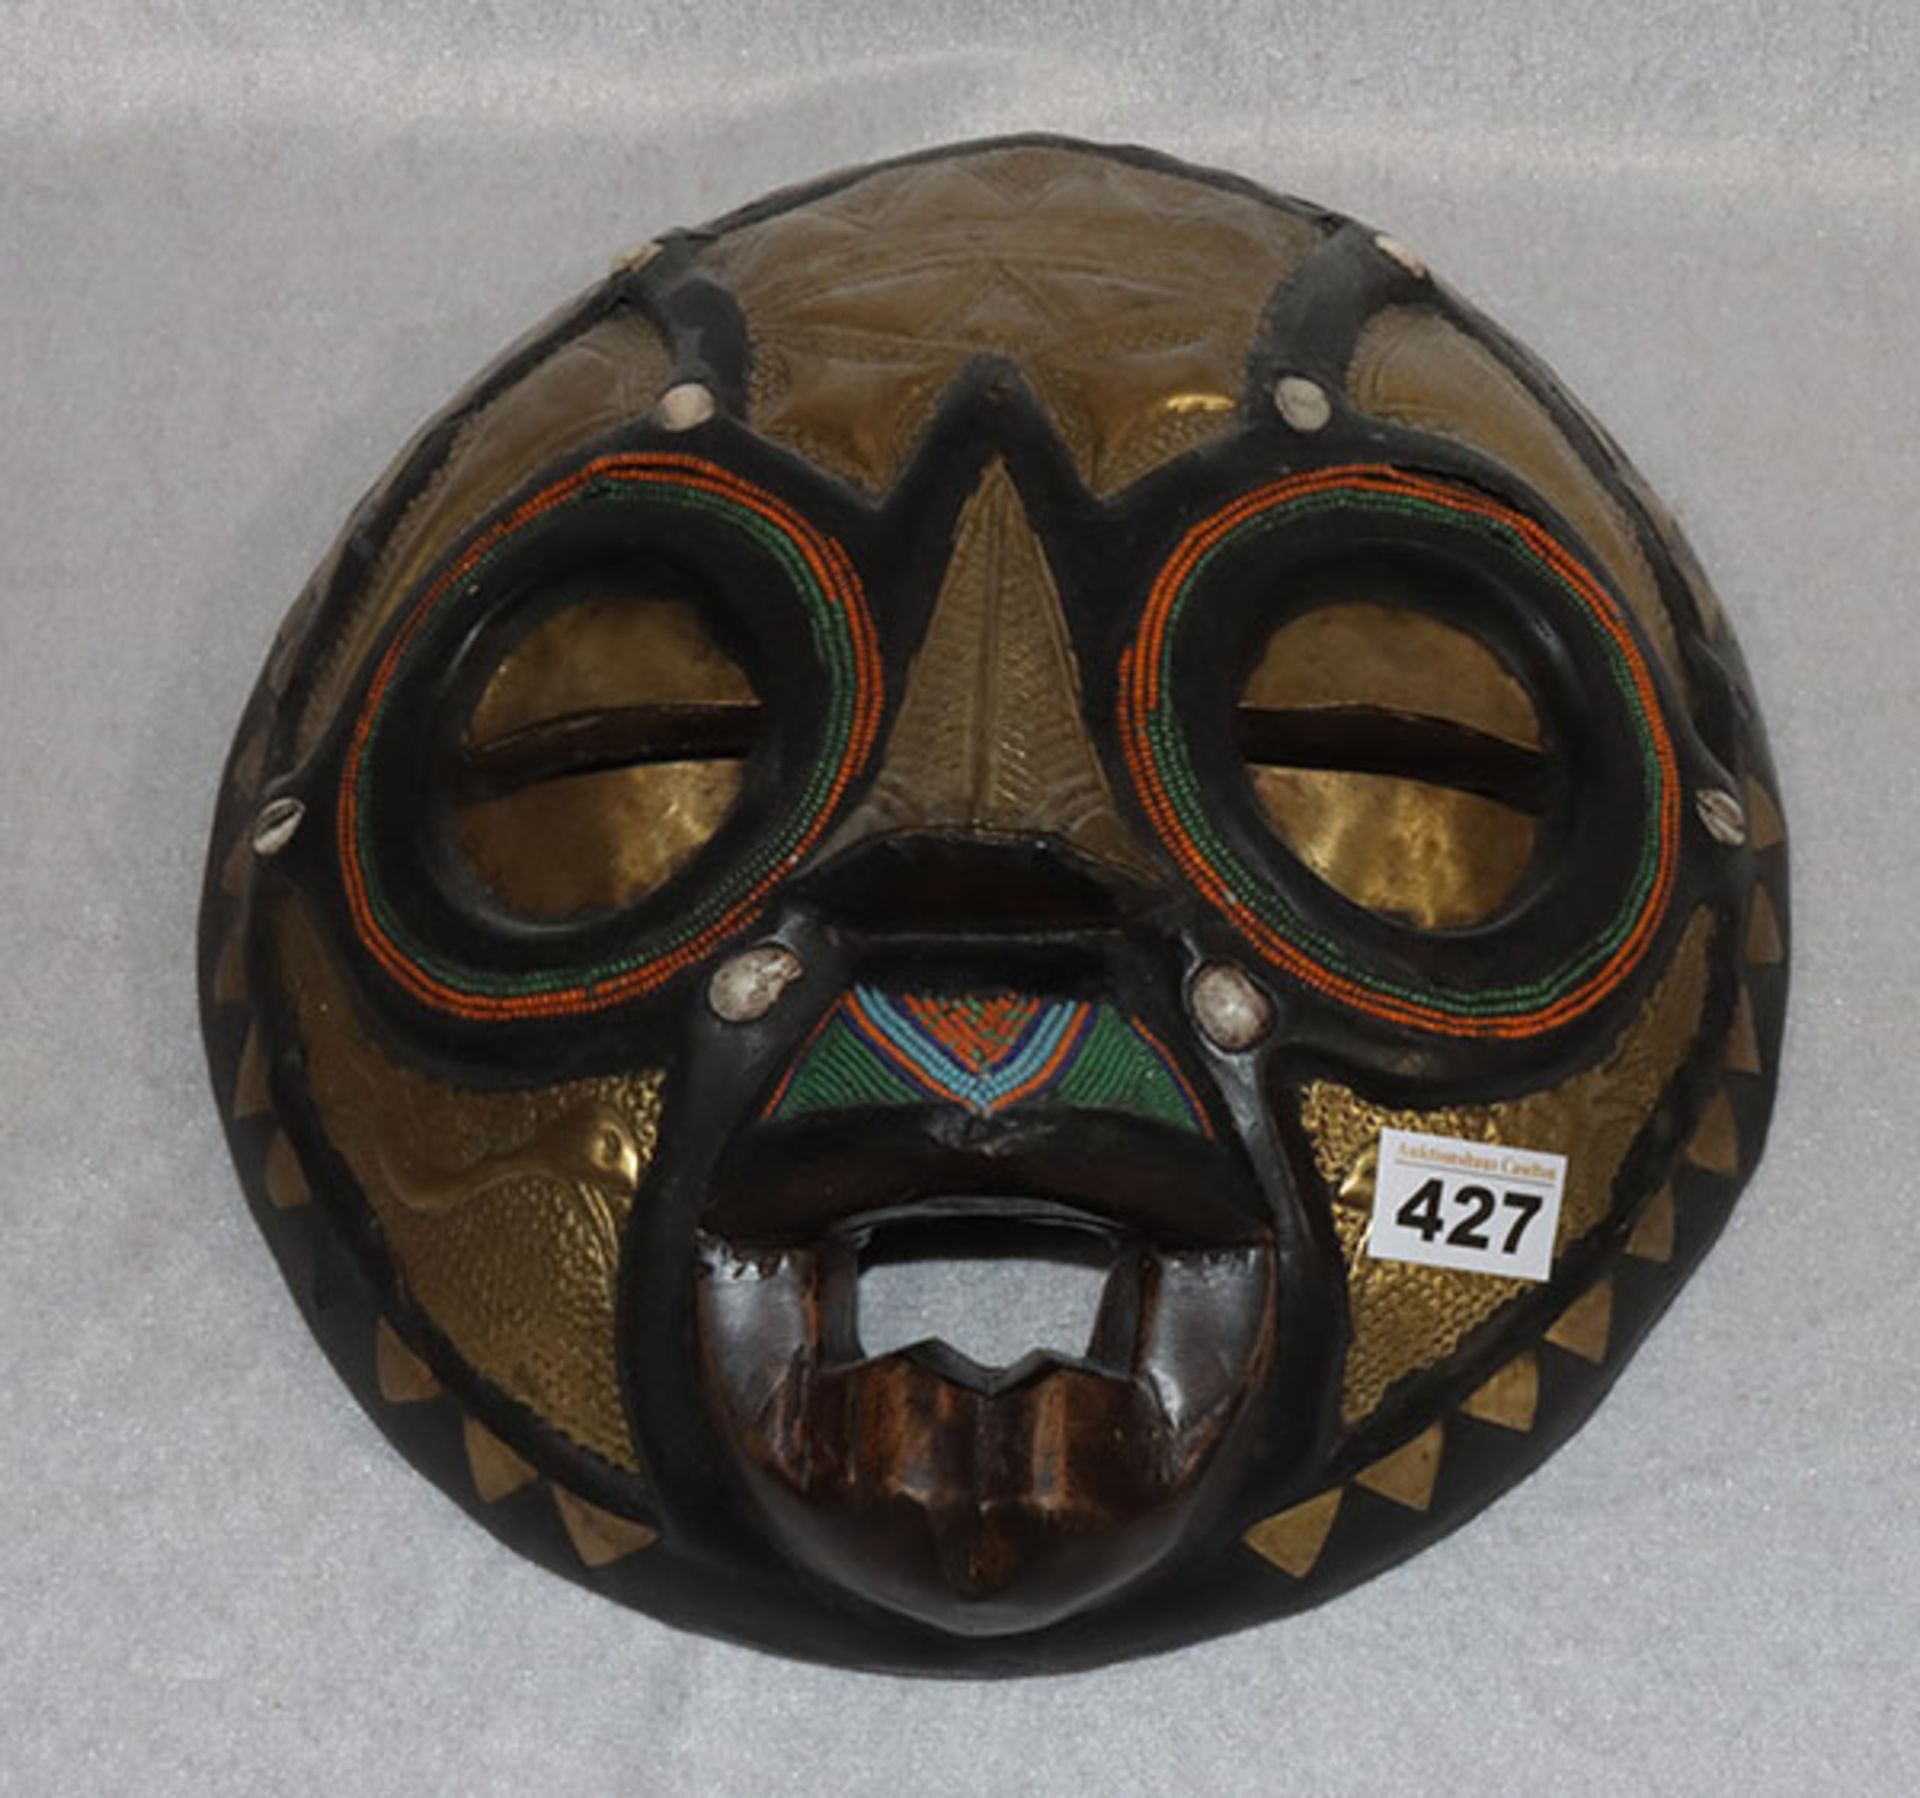 Afrikanische Bakota Maske, Benin, mit Messing und bunten Perlchen verziert, D ca. 30 cm, einige